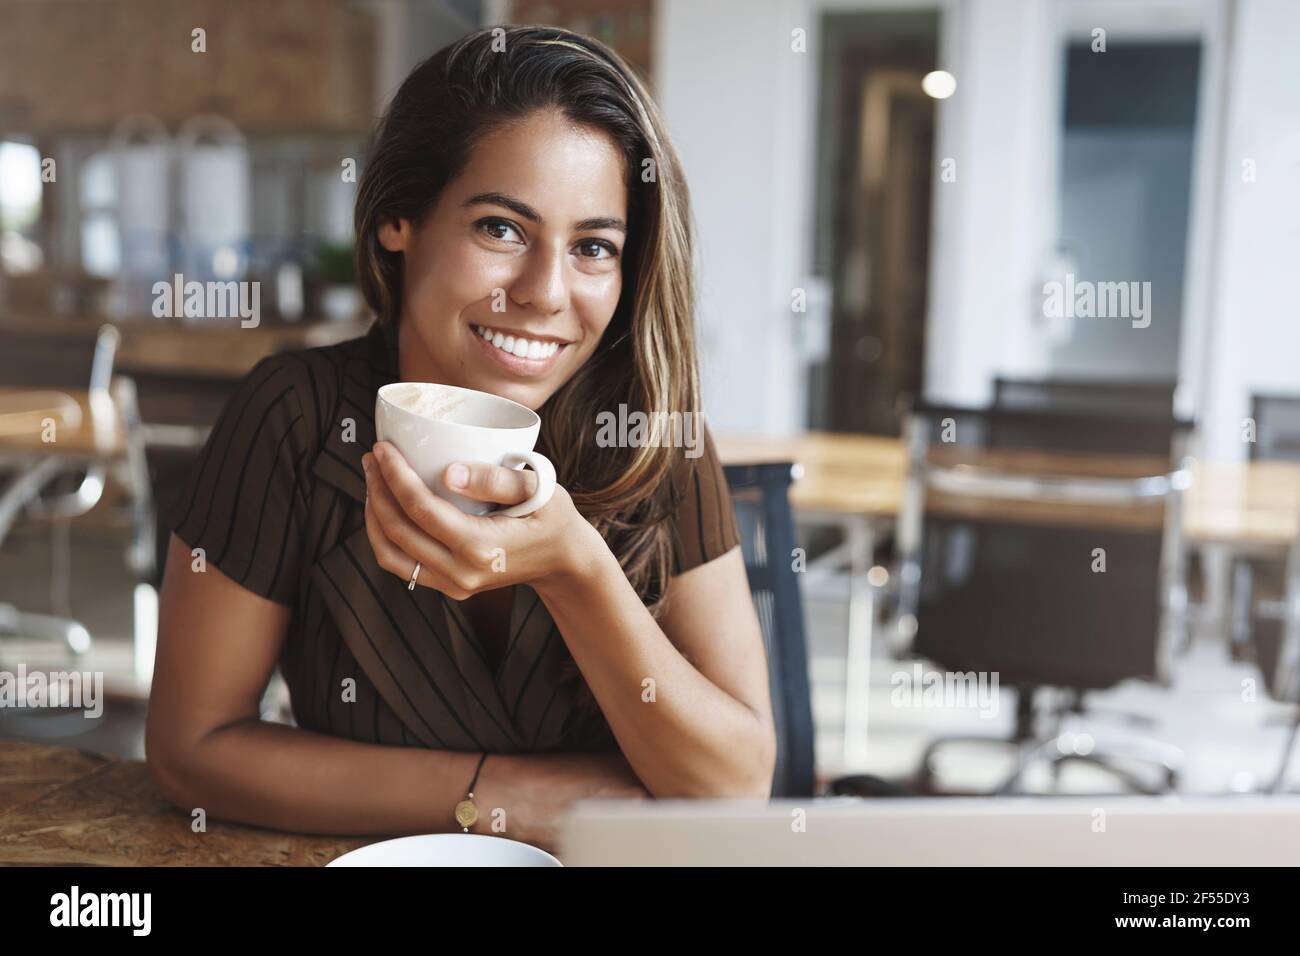 Wohlbefinden, Erfolg, Glück Konzept. Liebenswert lächelnd glücklich junge gebräunte Frau durchbohrt Nase halten Kaffeetasse grinsend freudig Kamera sitzen Café Tisch Stockfoto